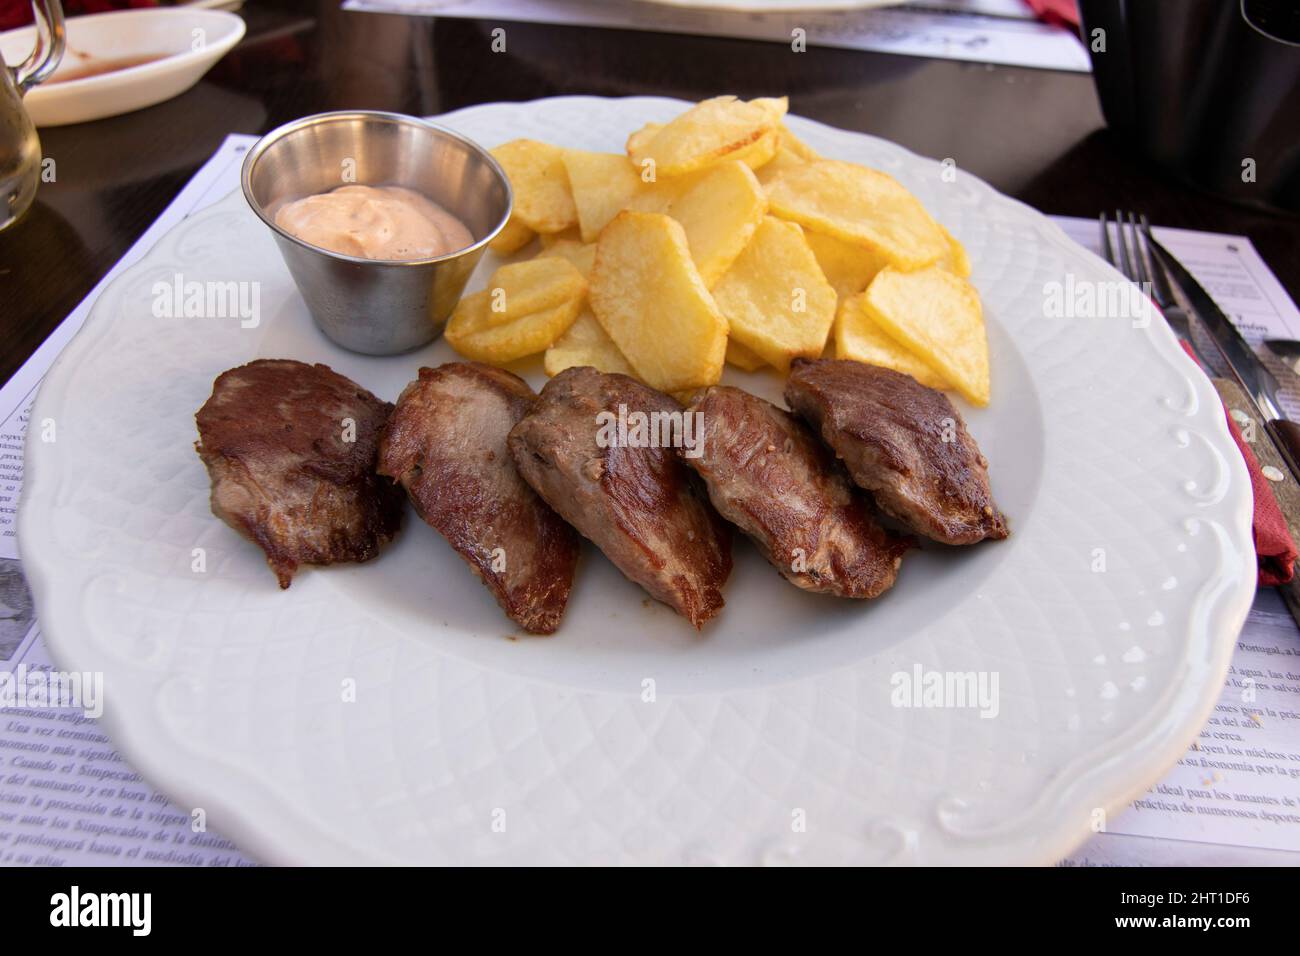 Steak de sirloin grillé avec des tranches de pommes de terre grillées, le tout sur une assiette blanche. Un bol de sauce chaude. Concept alimentaire espagnol. Banque D'Images